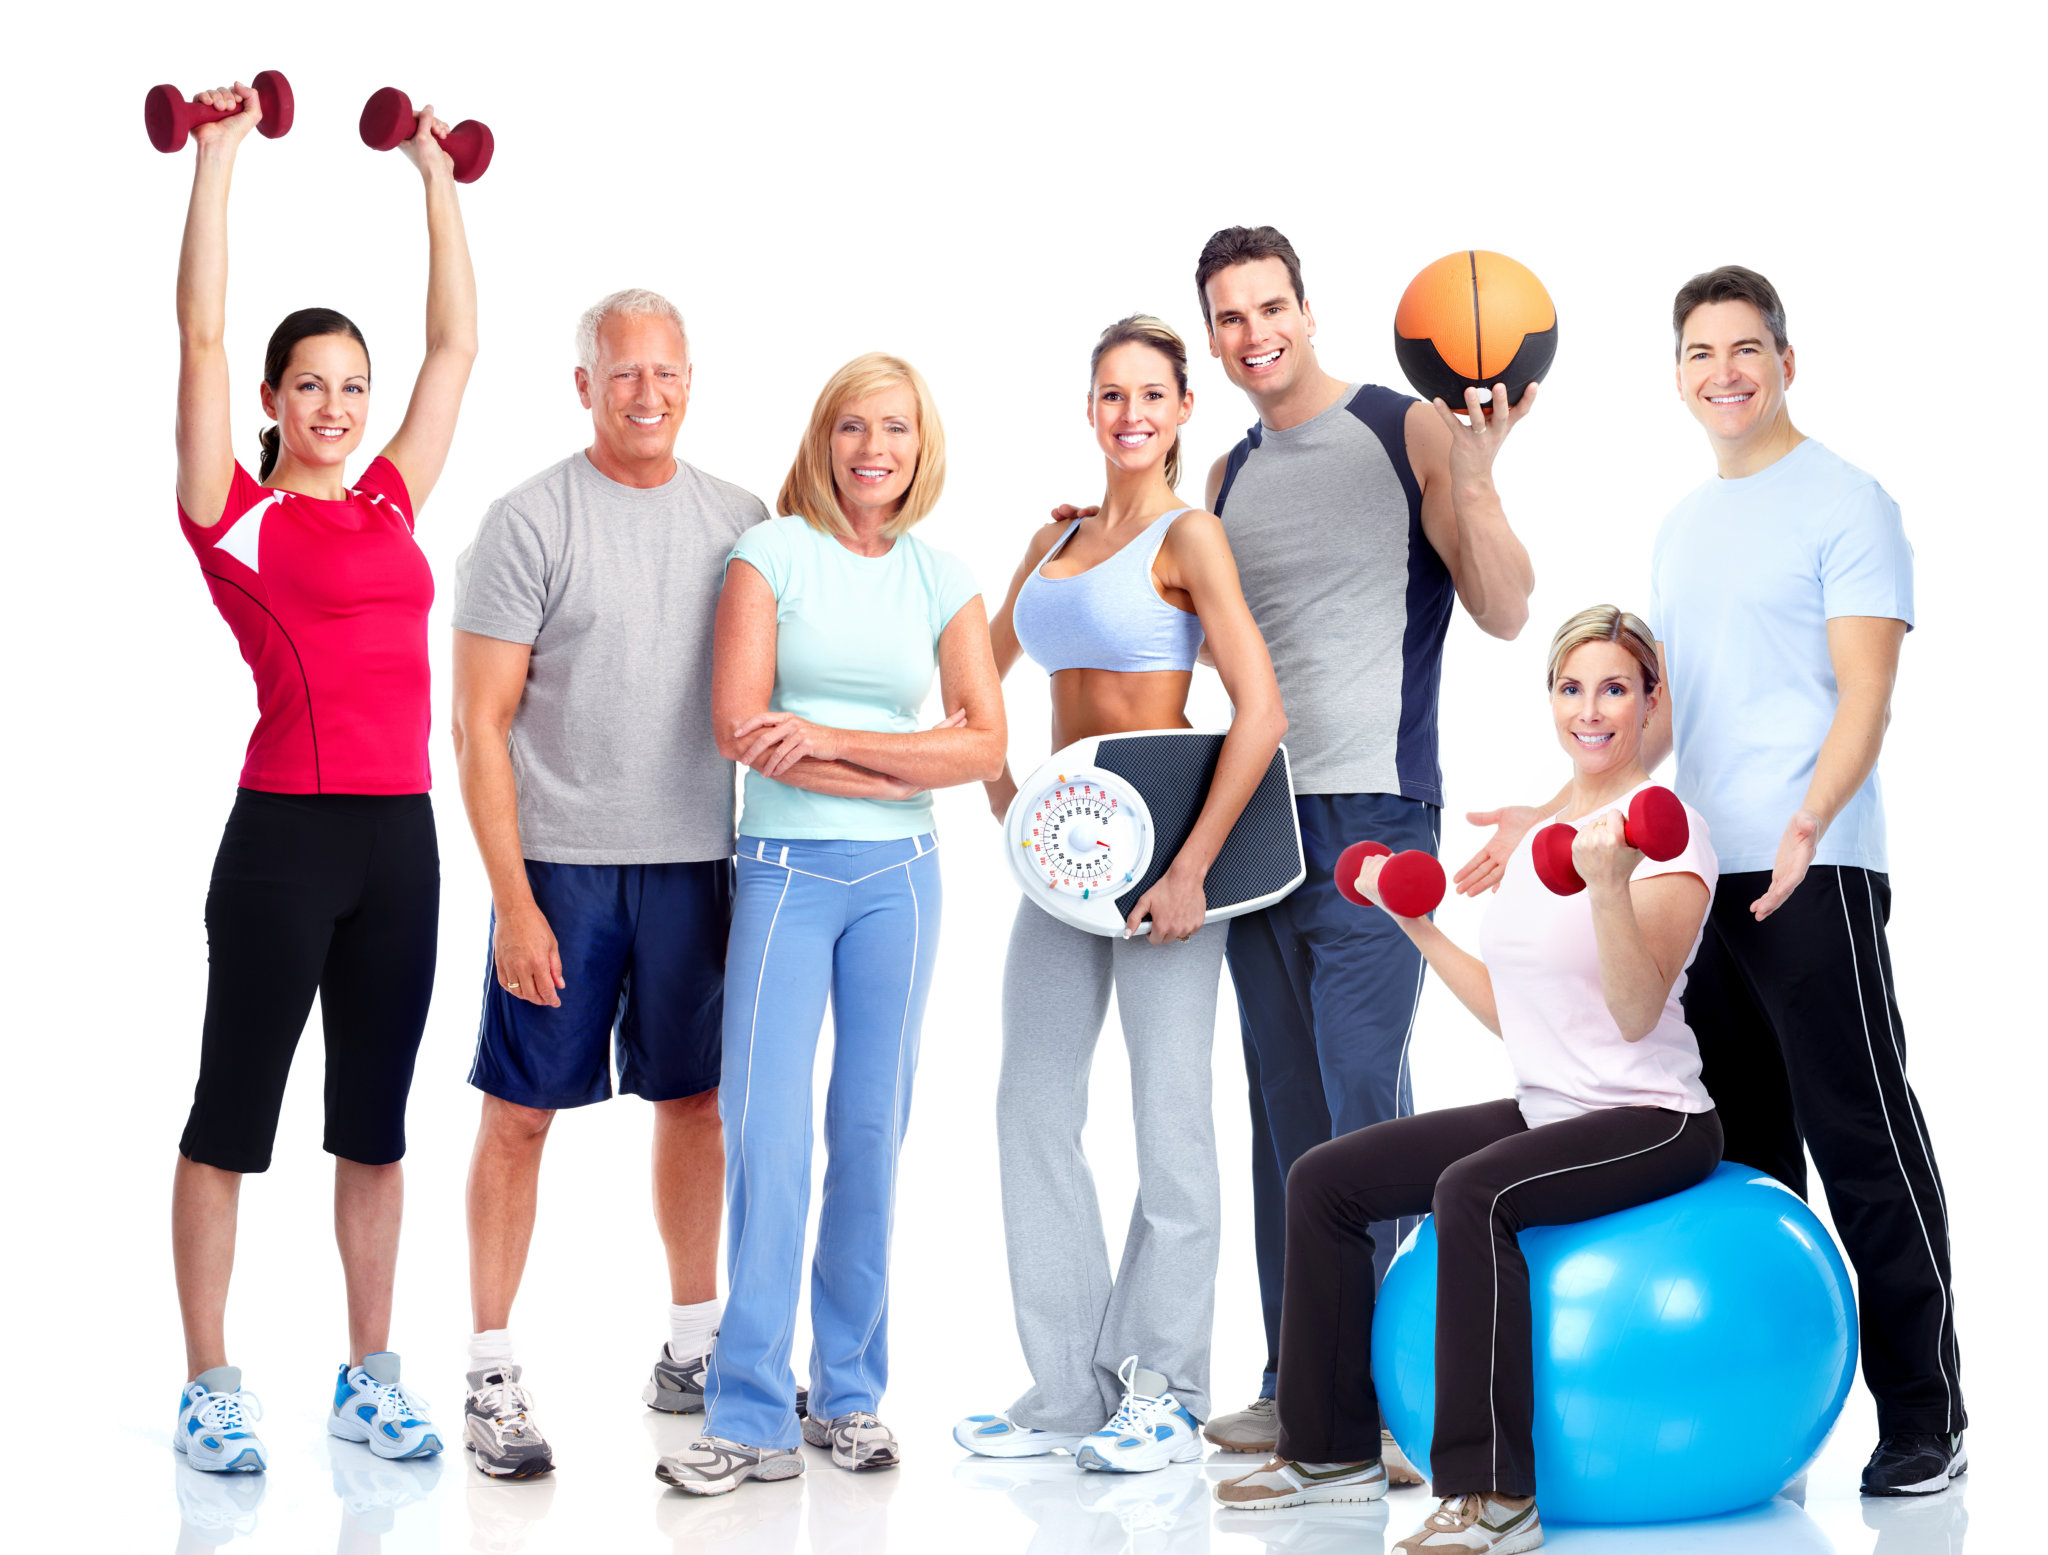 Культура как образ жизни человека. Занятие физкультурой и спортом. Физическая активность и здоровье. Спортивные люди. ЗОЖ спорт.